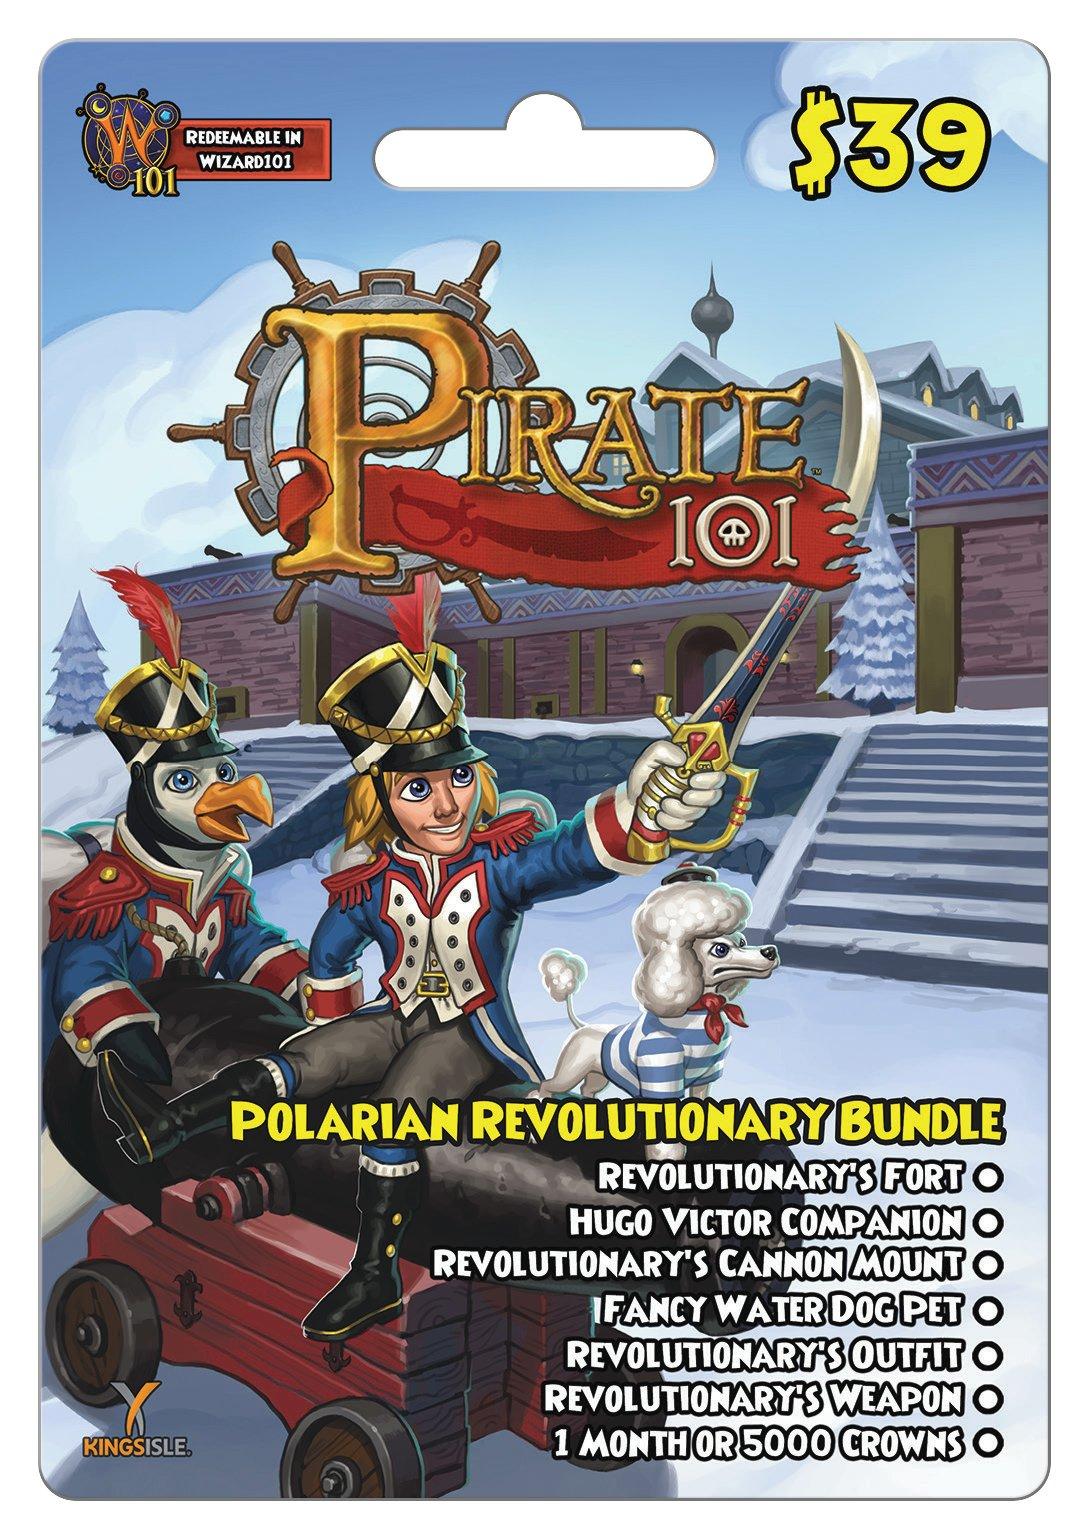 KingsIsle Entertainment KingsIsle Pirate101 Polarian Revolutionary Bundle - PC